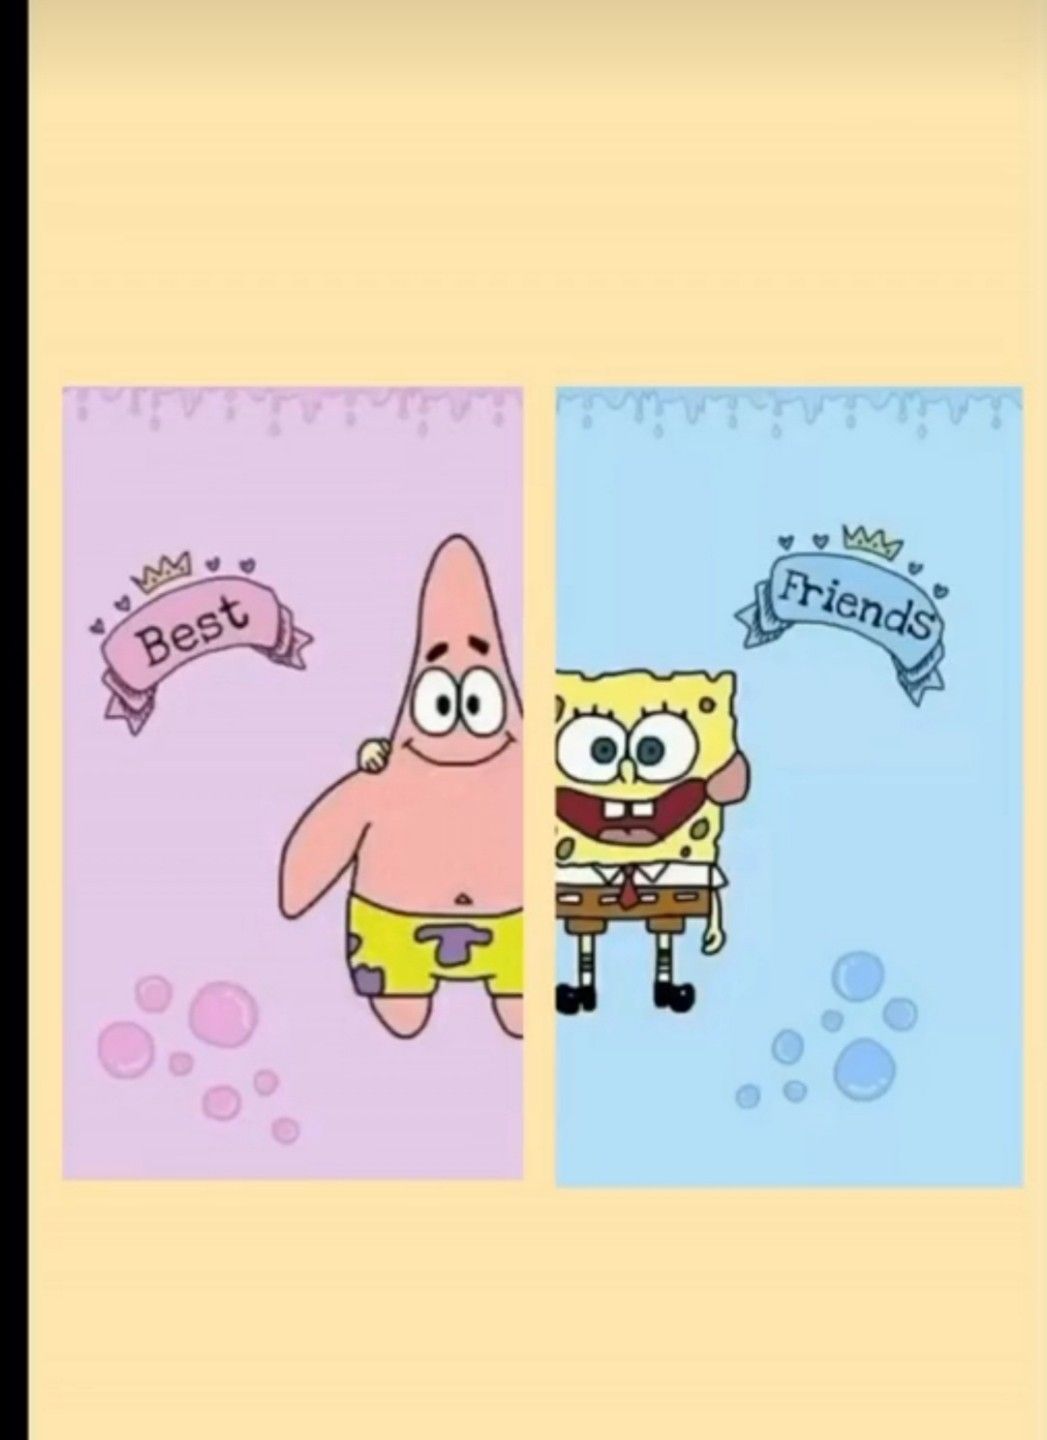 Spongebob and patrick wallpaper - Bestie